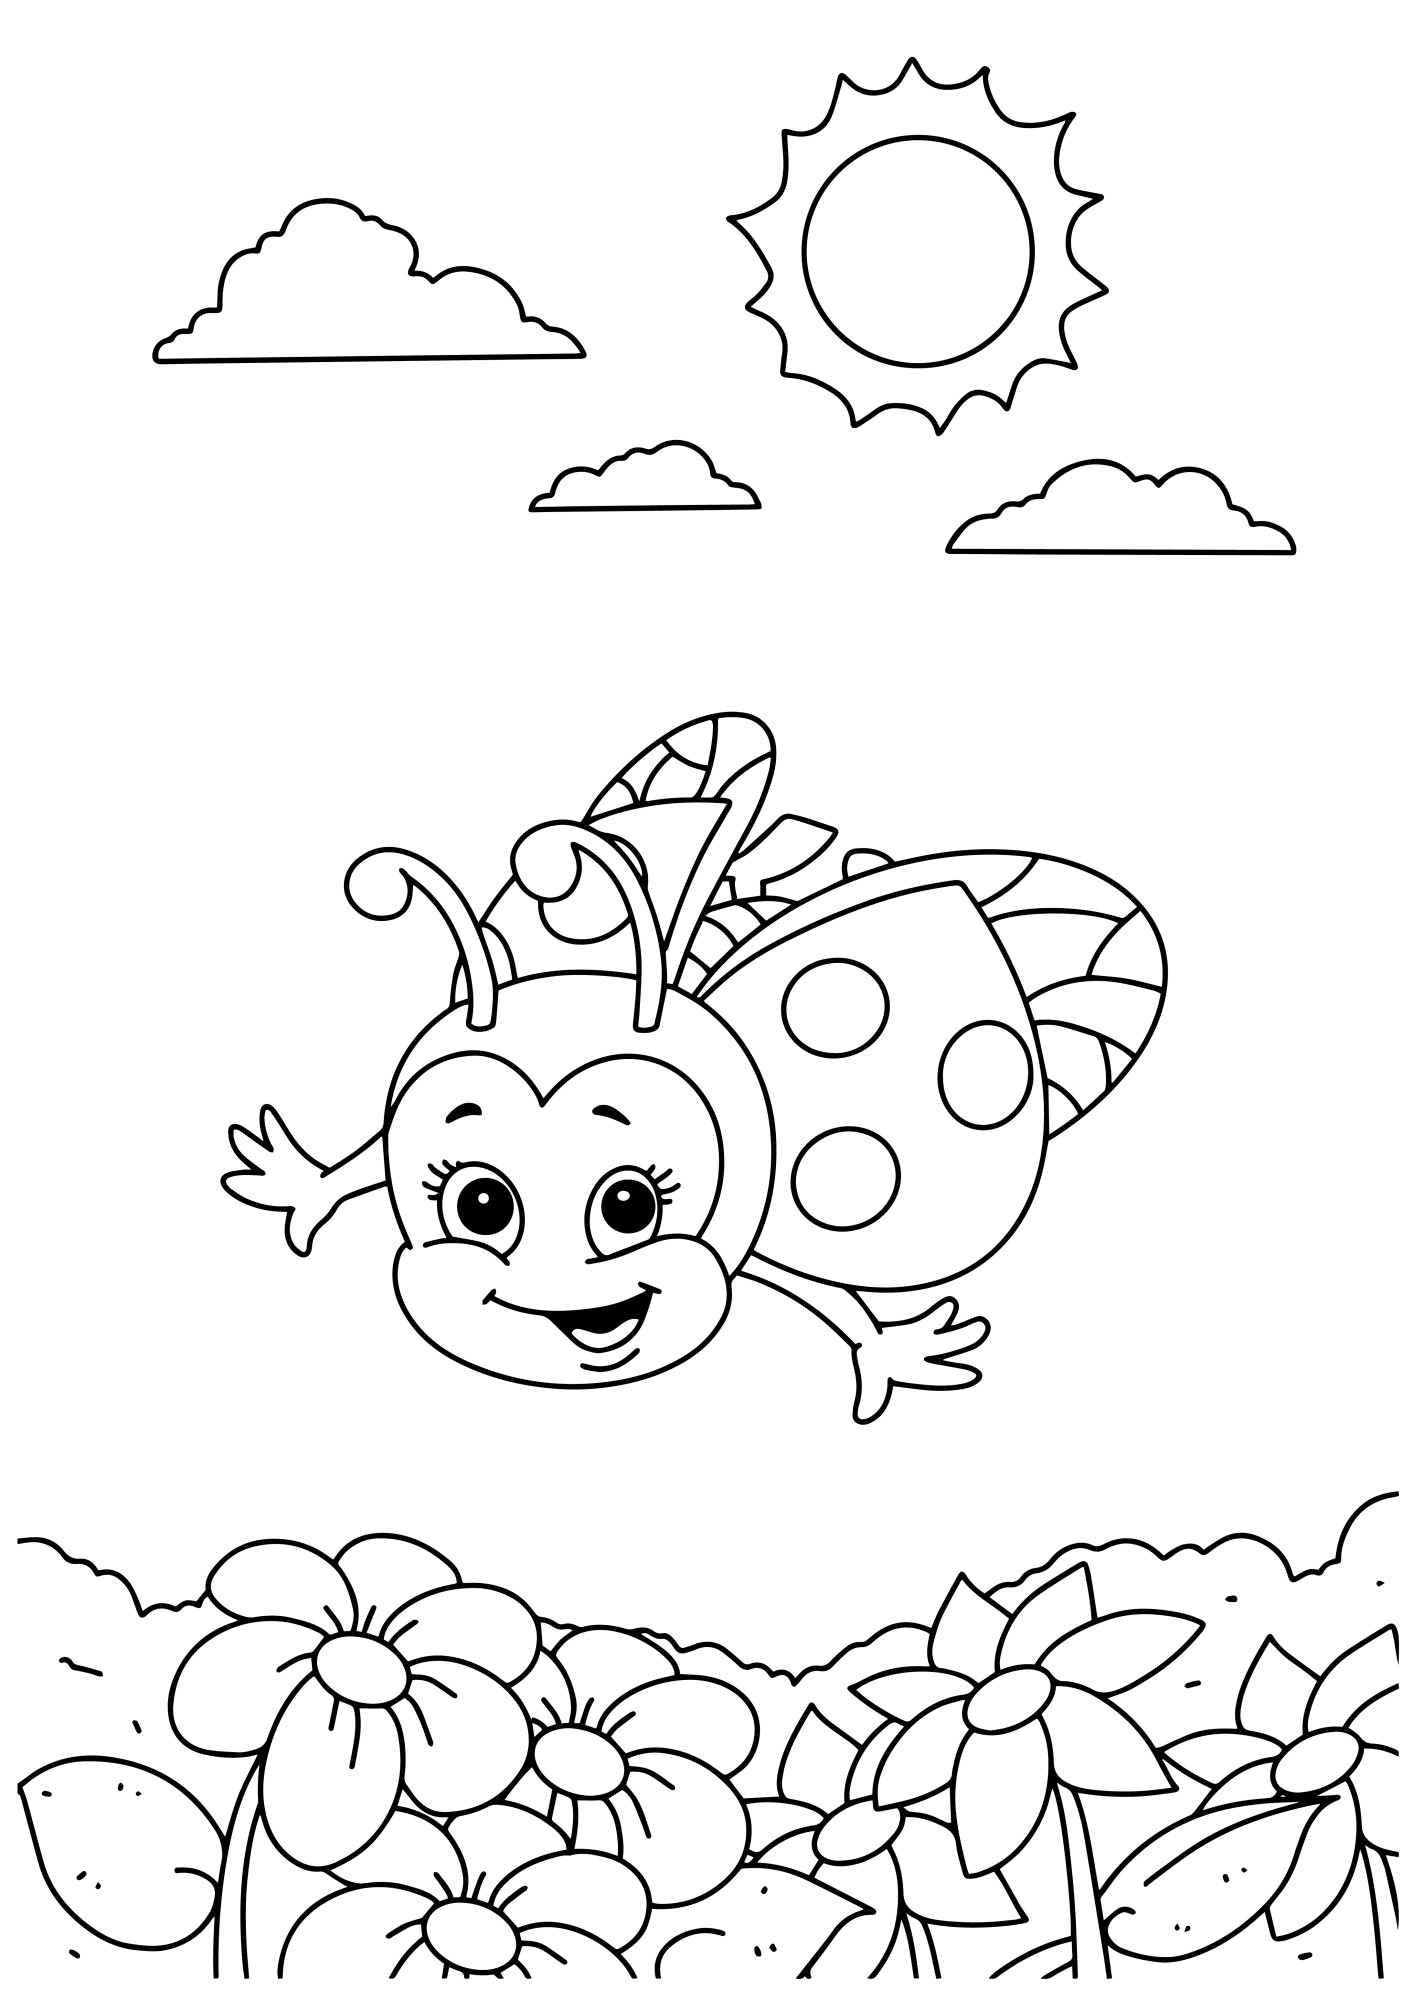 Раскраска для детей: мультяшная божья коровка летит над цветами